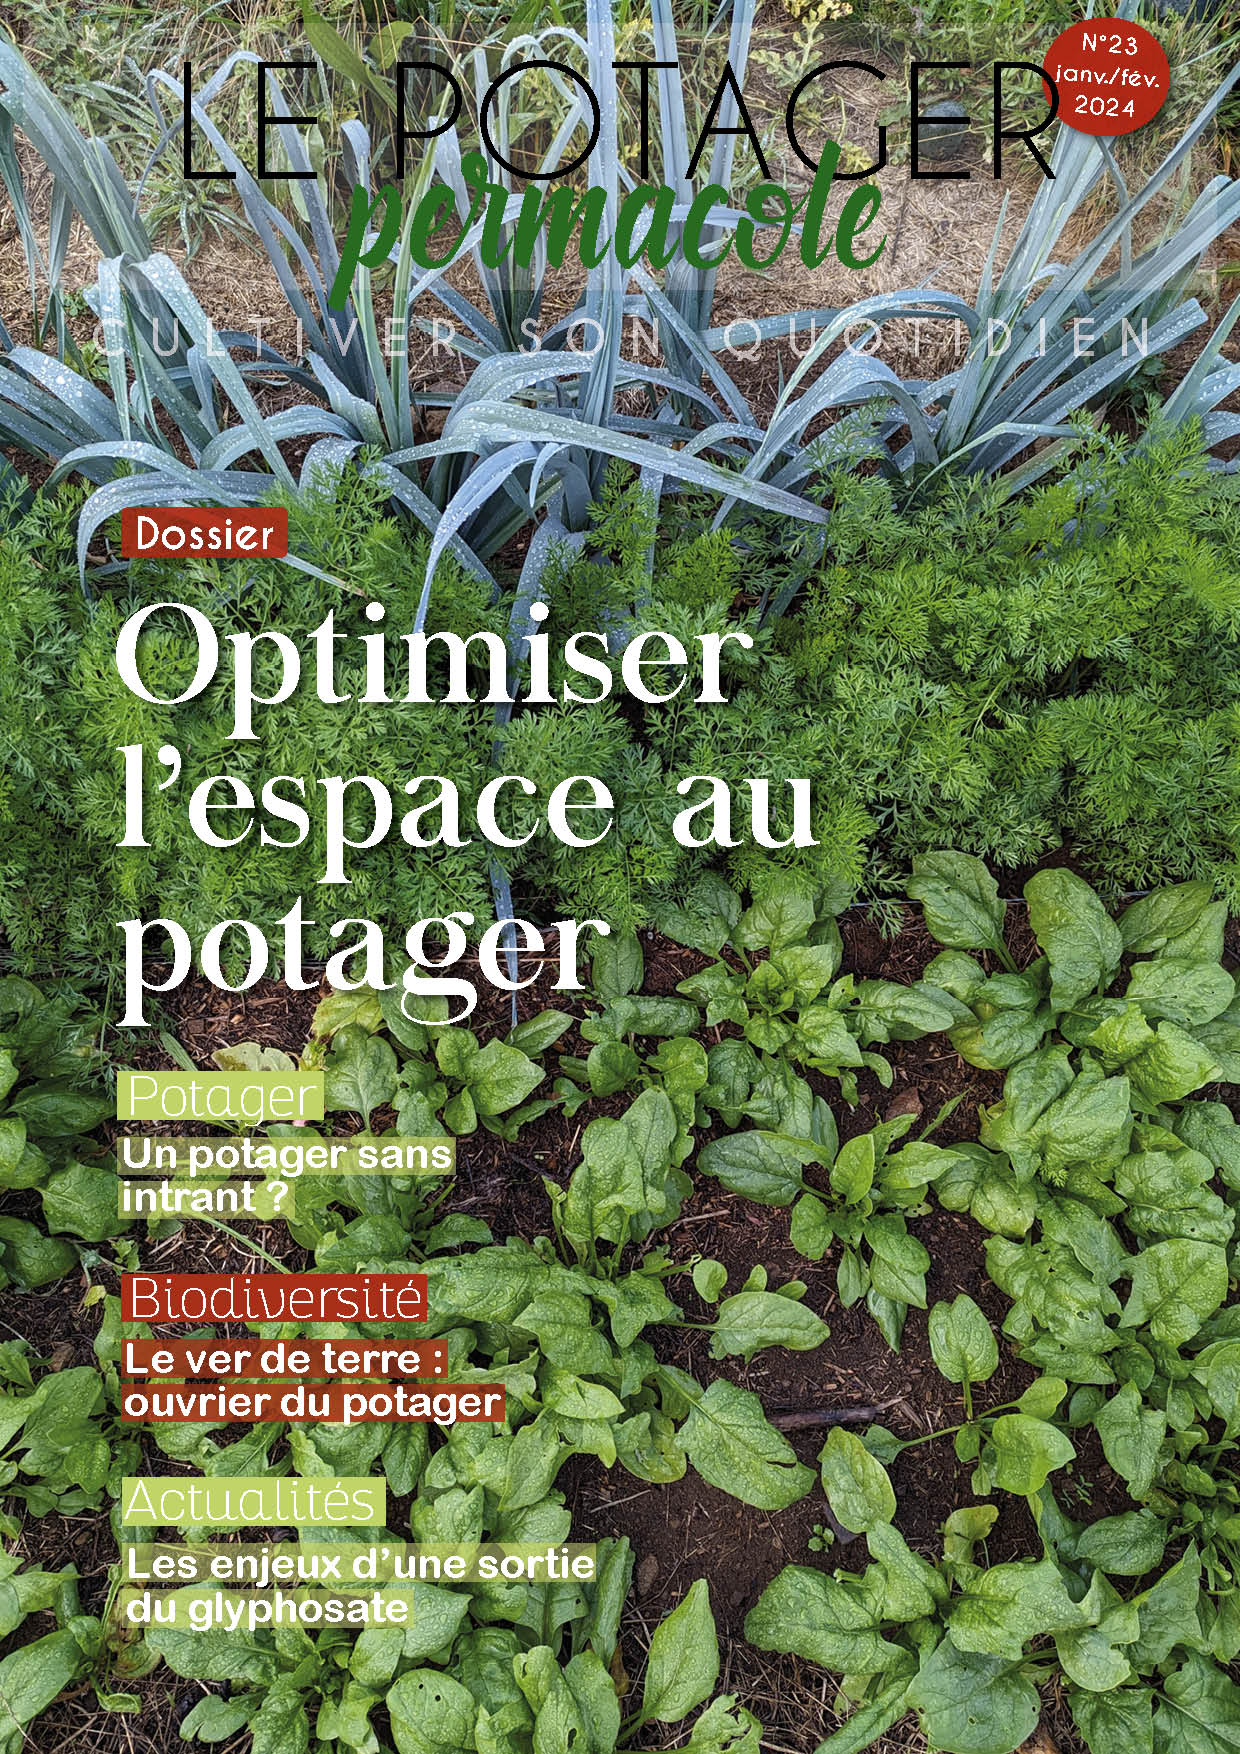 Créer un jardin d'hiver chez soi - Lorraine Magazine